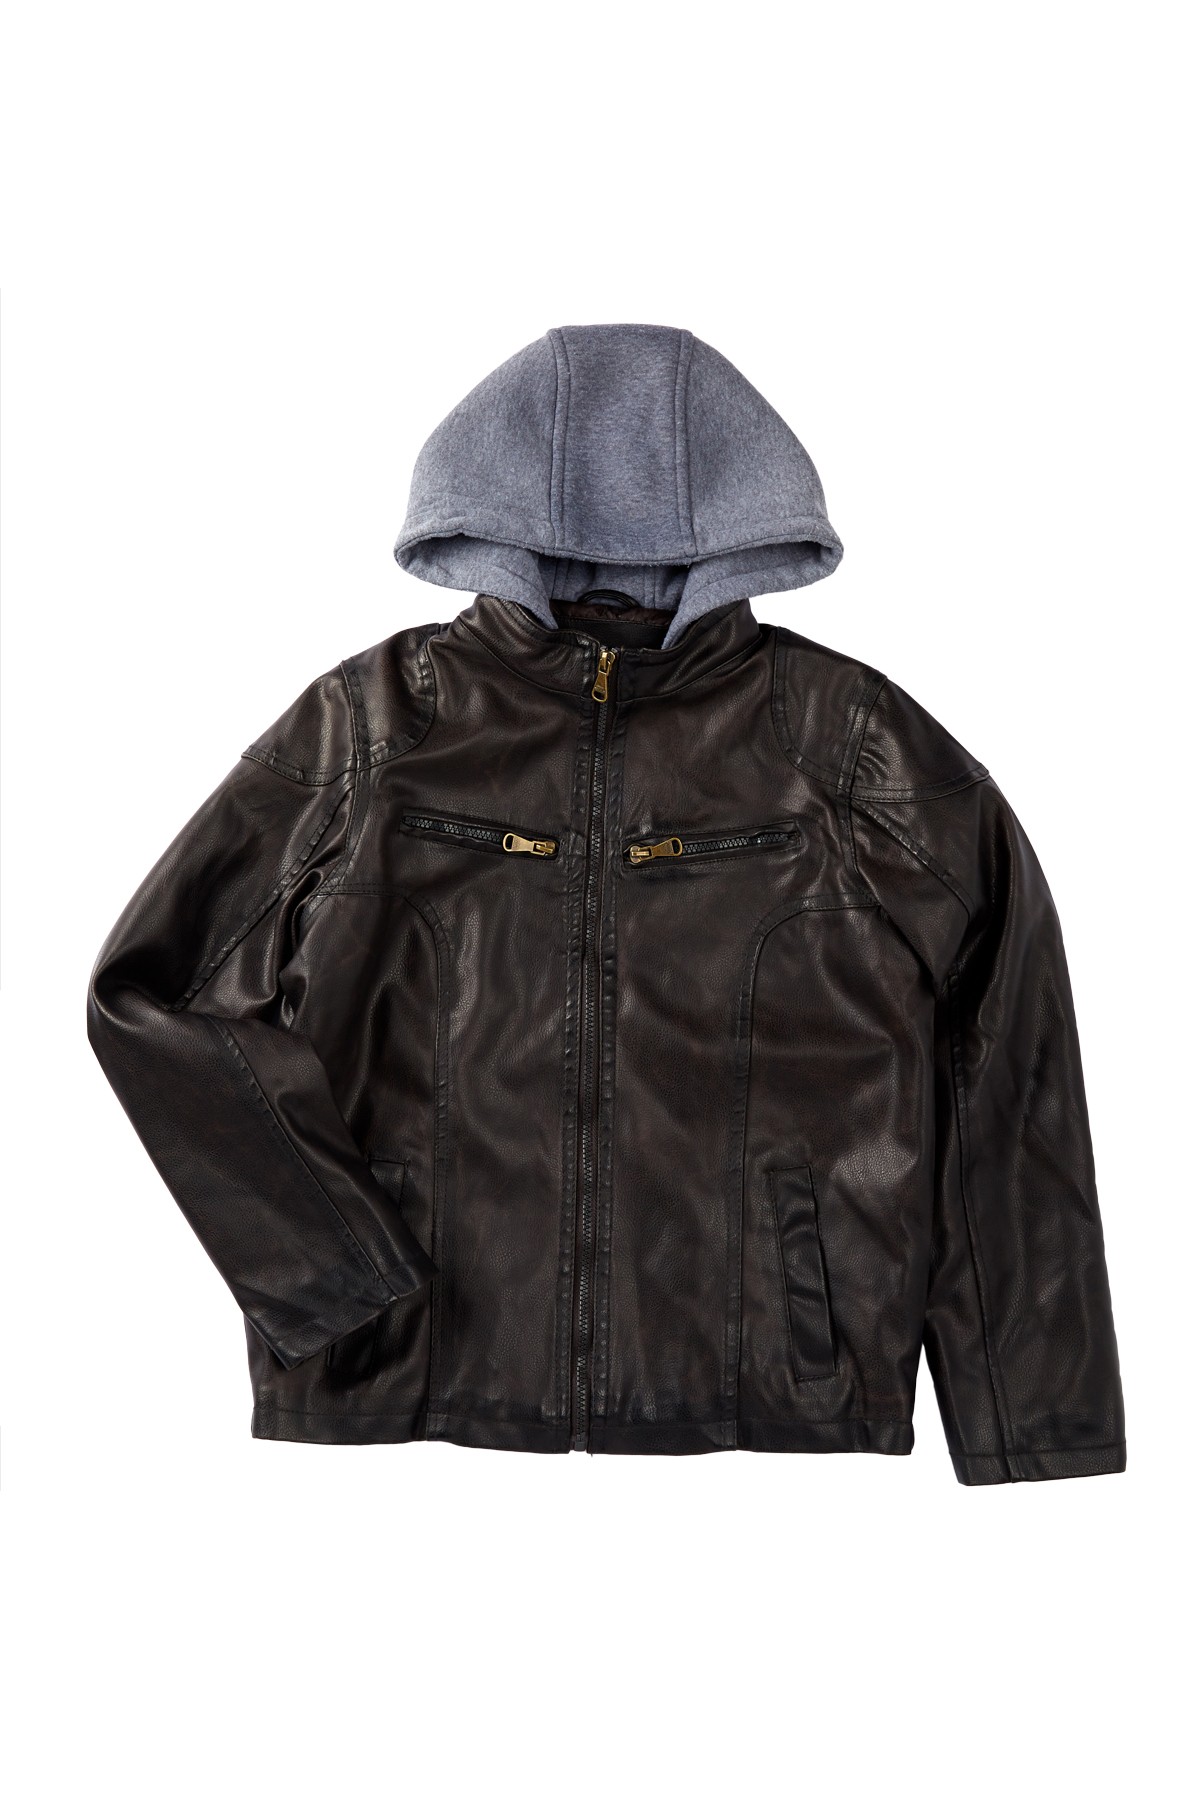 Topshop Leather Biker Jacket (Nordstrom Exclusive)